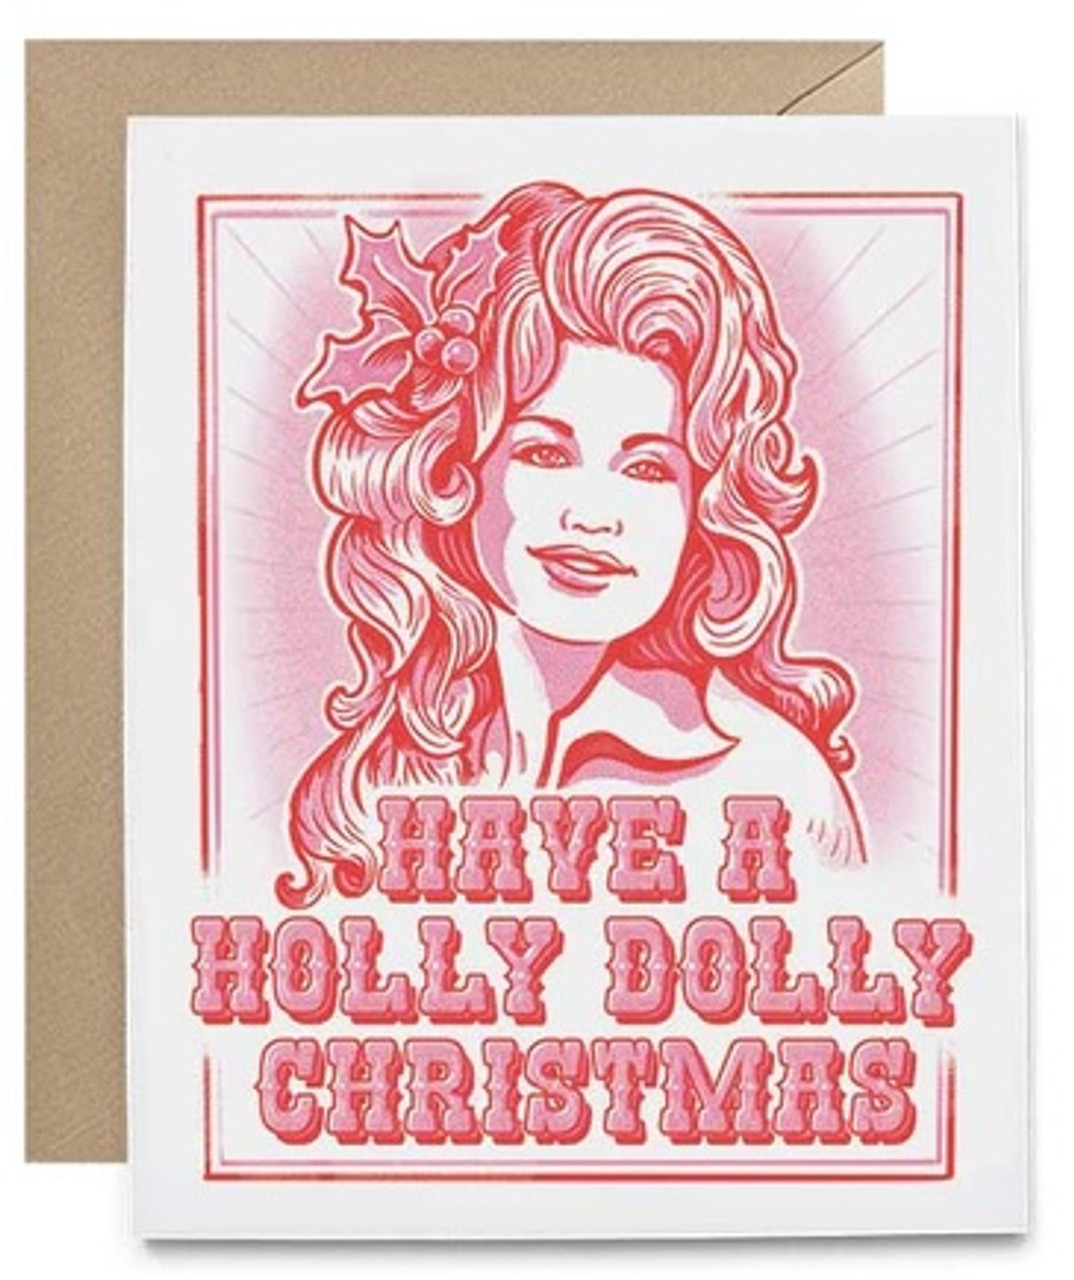 Dolly Parton Holly Dolly Christmas Card Canada Retrofestiveca 7040